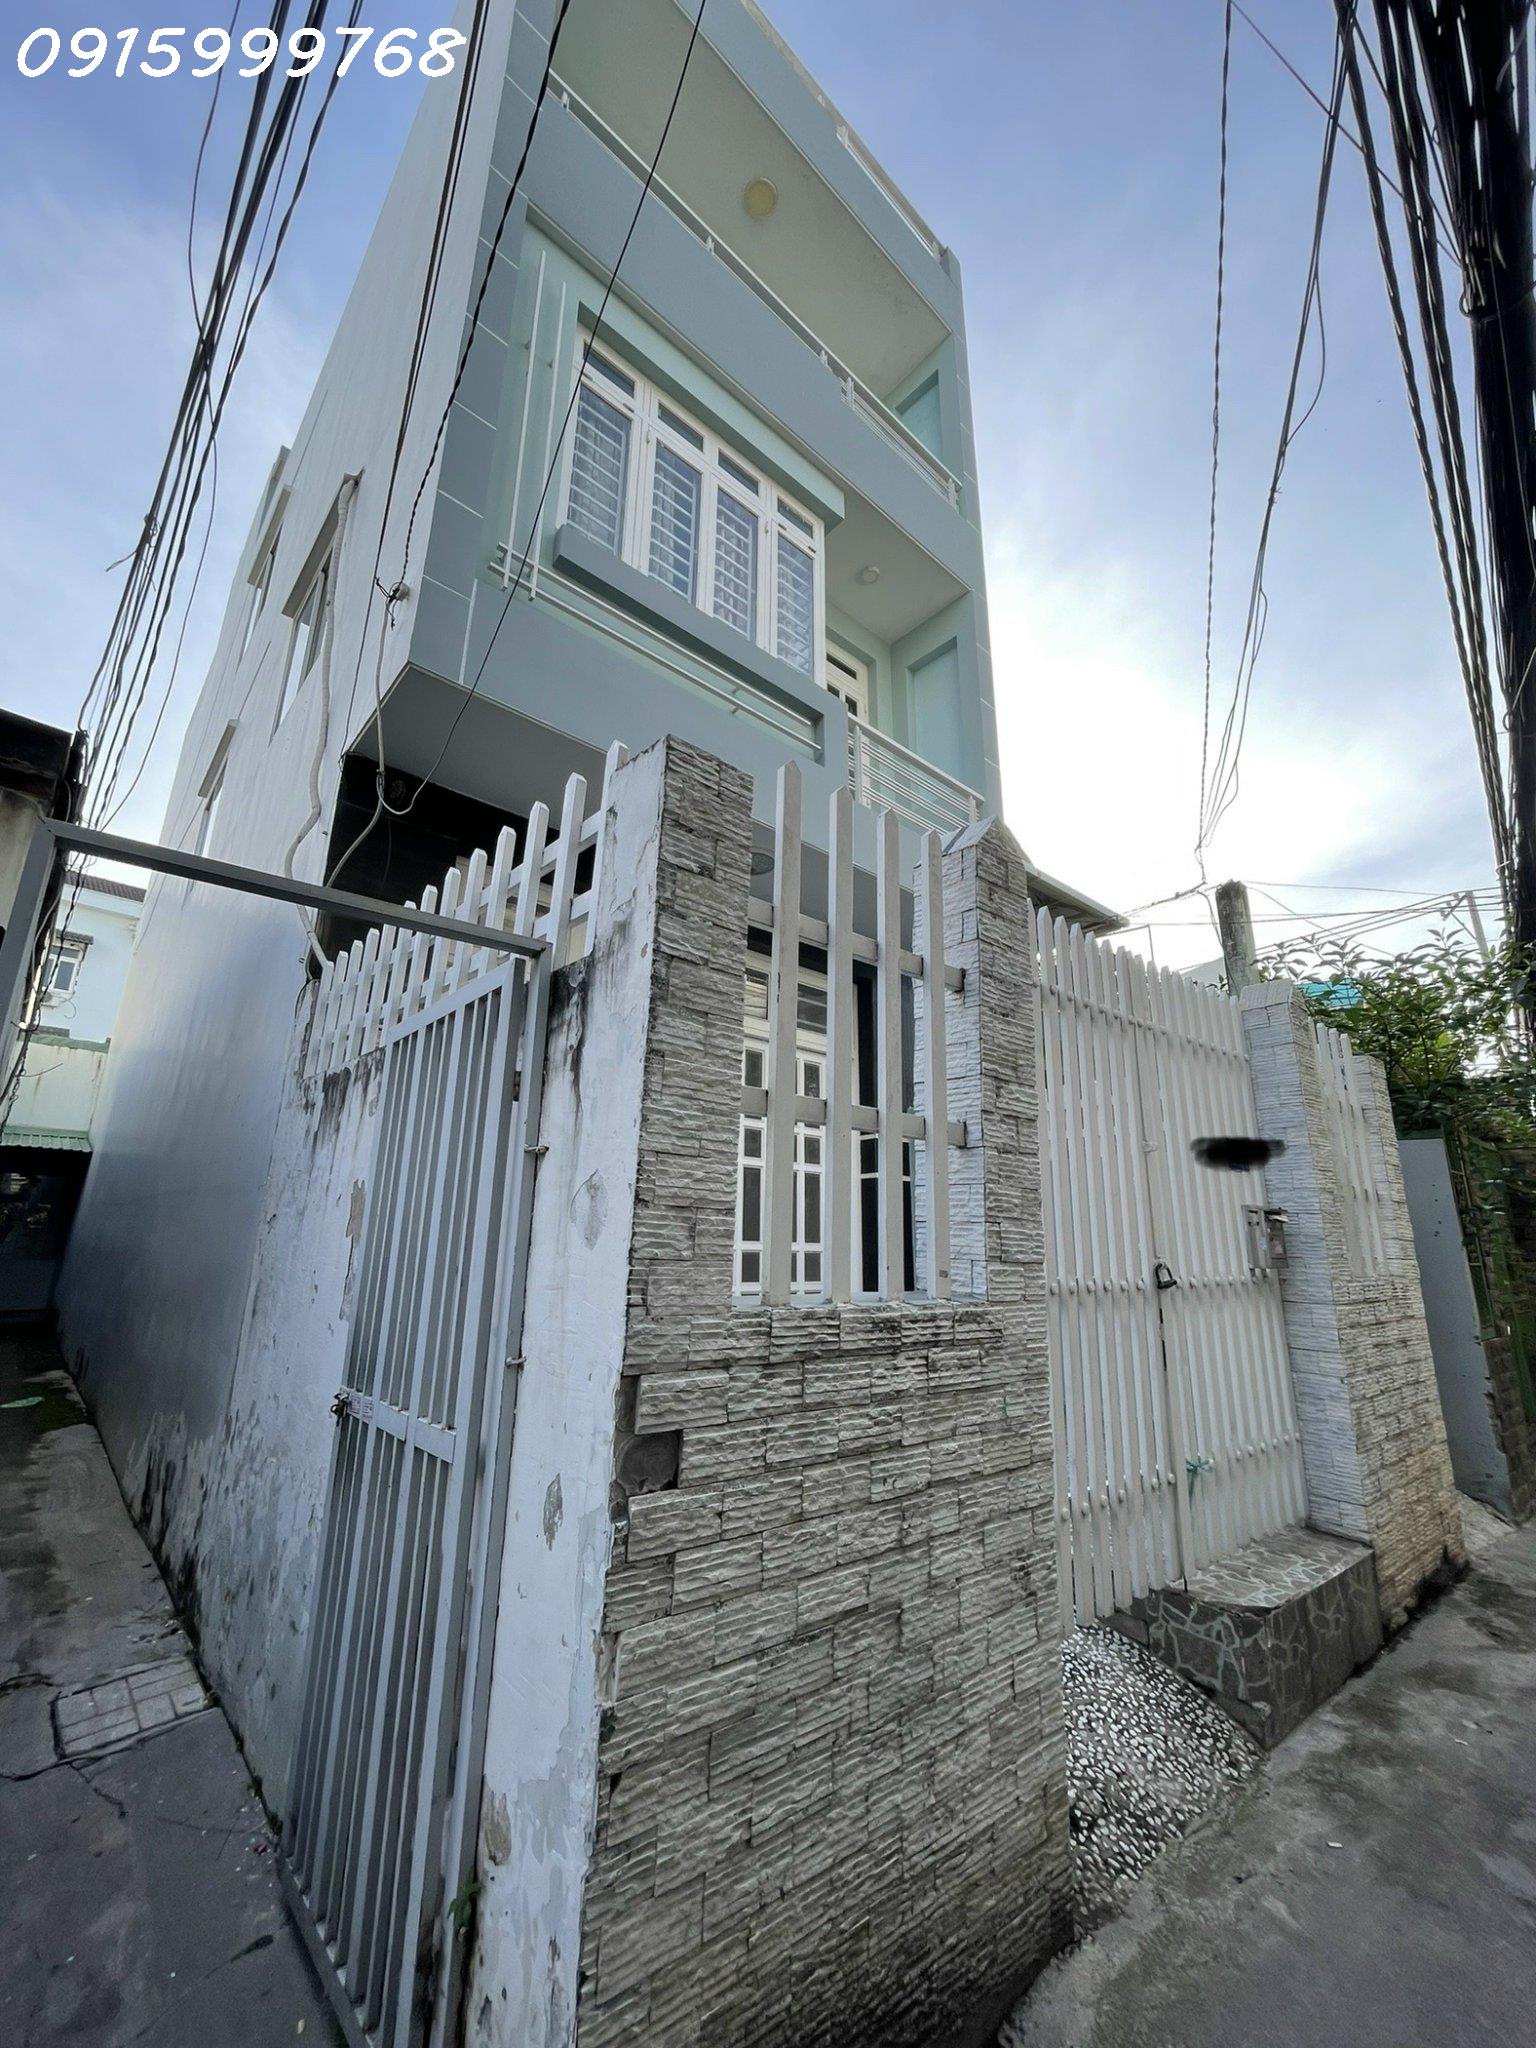 Nhà to ở Q7, hẻm lô nhì cách đường Huỳnh Tấn Phát 2 căn, DT 108m2, 4 tầng, có sân sau, giá 6tỷ5 - Ảnh 1